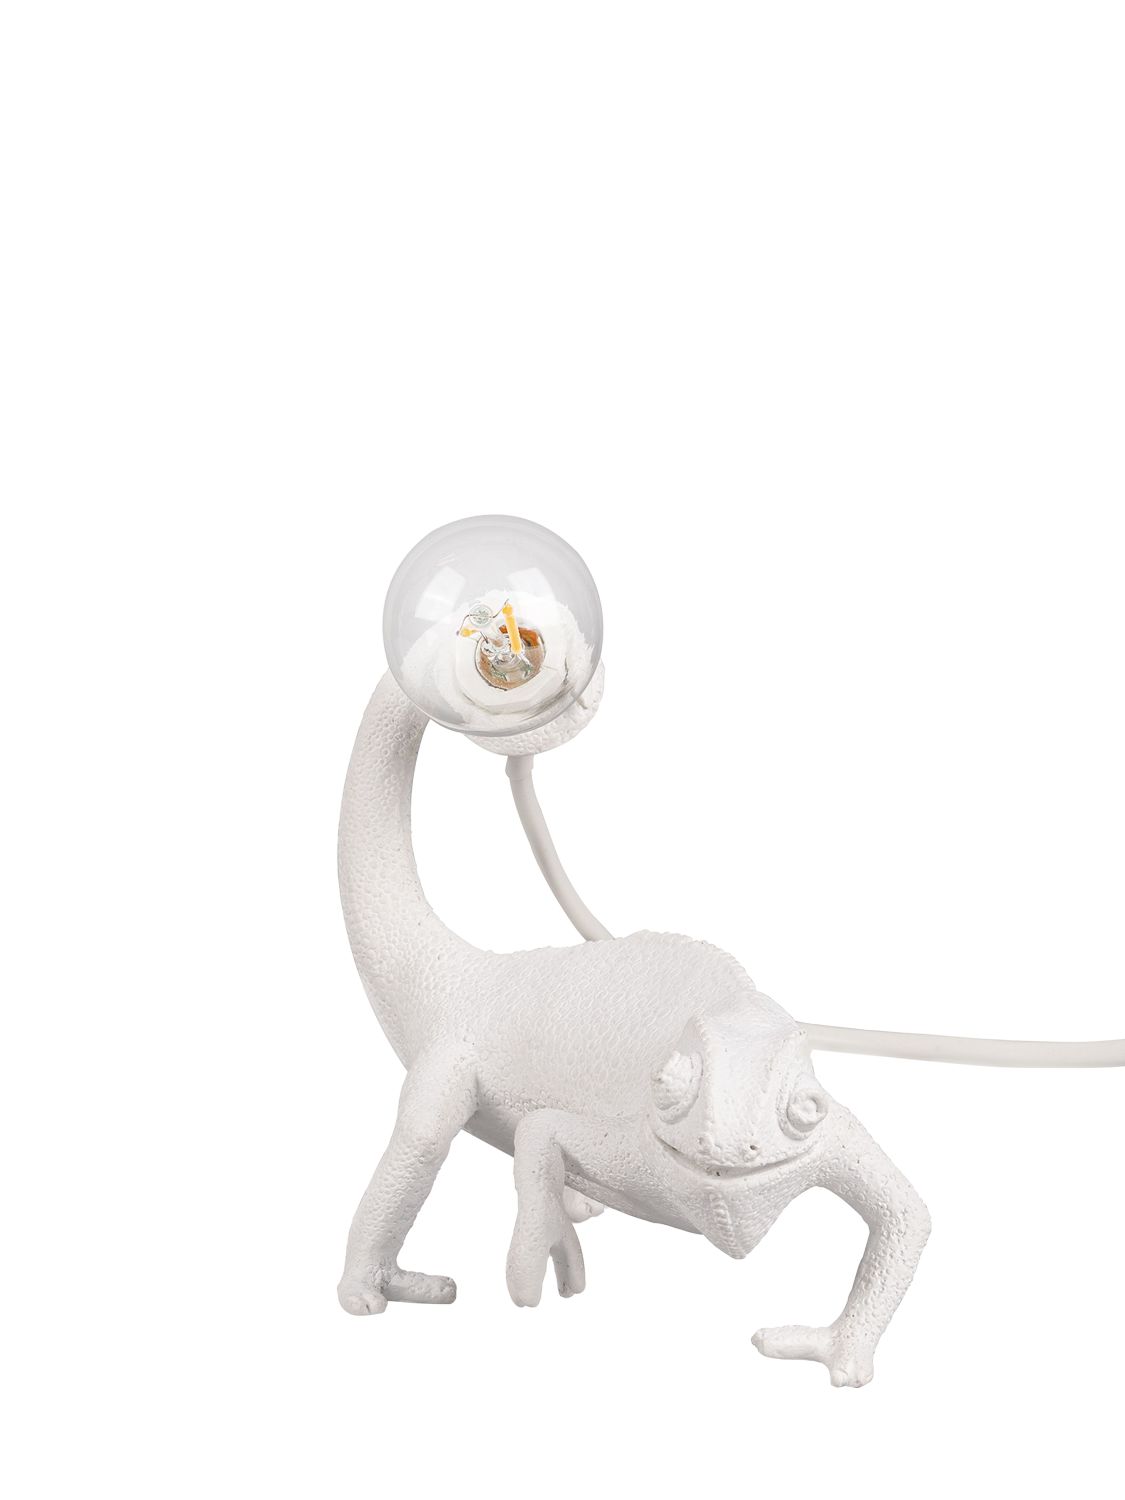 Image of Still Chameleon Lamp